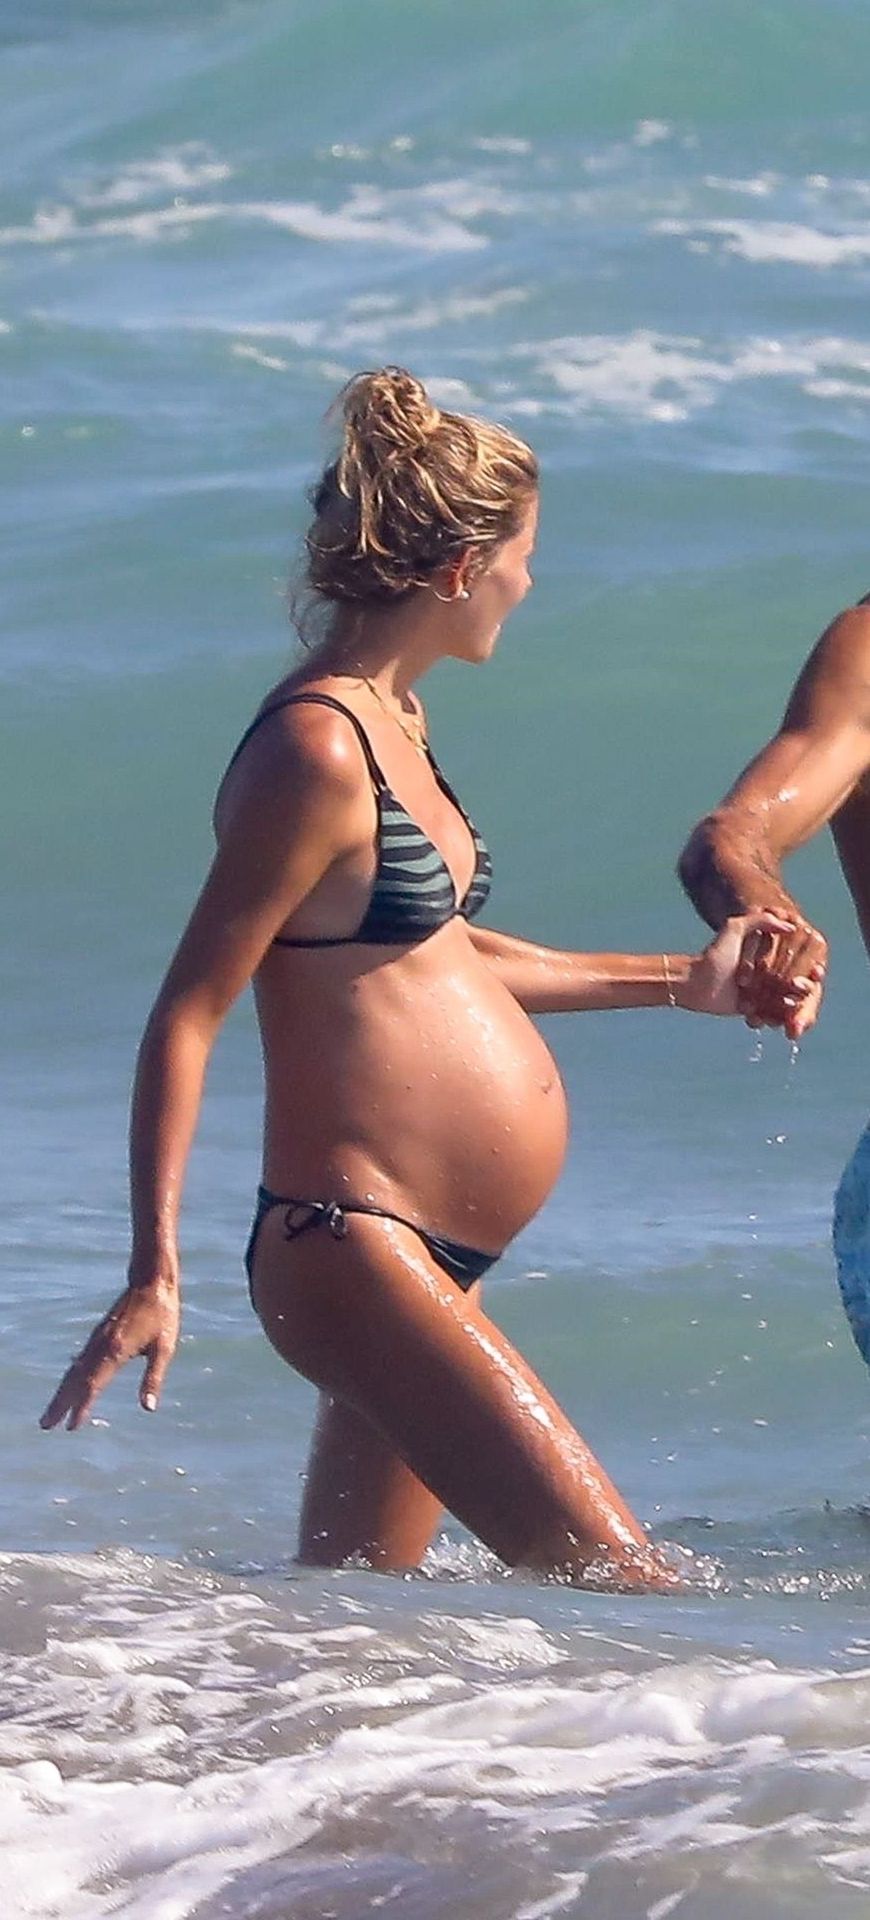 Alejandra Fazio Shows Her Slim Body in a Bikini on the Beach in Ostia (39 Photos)